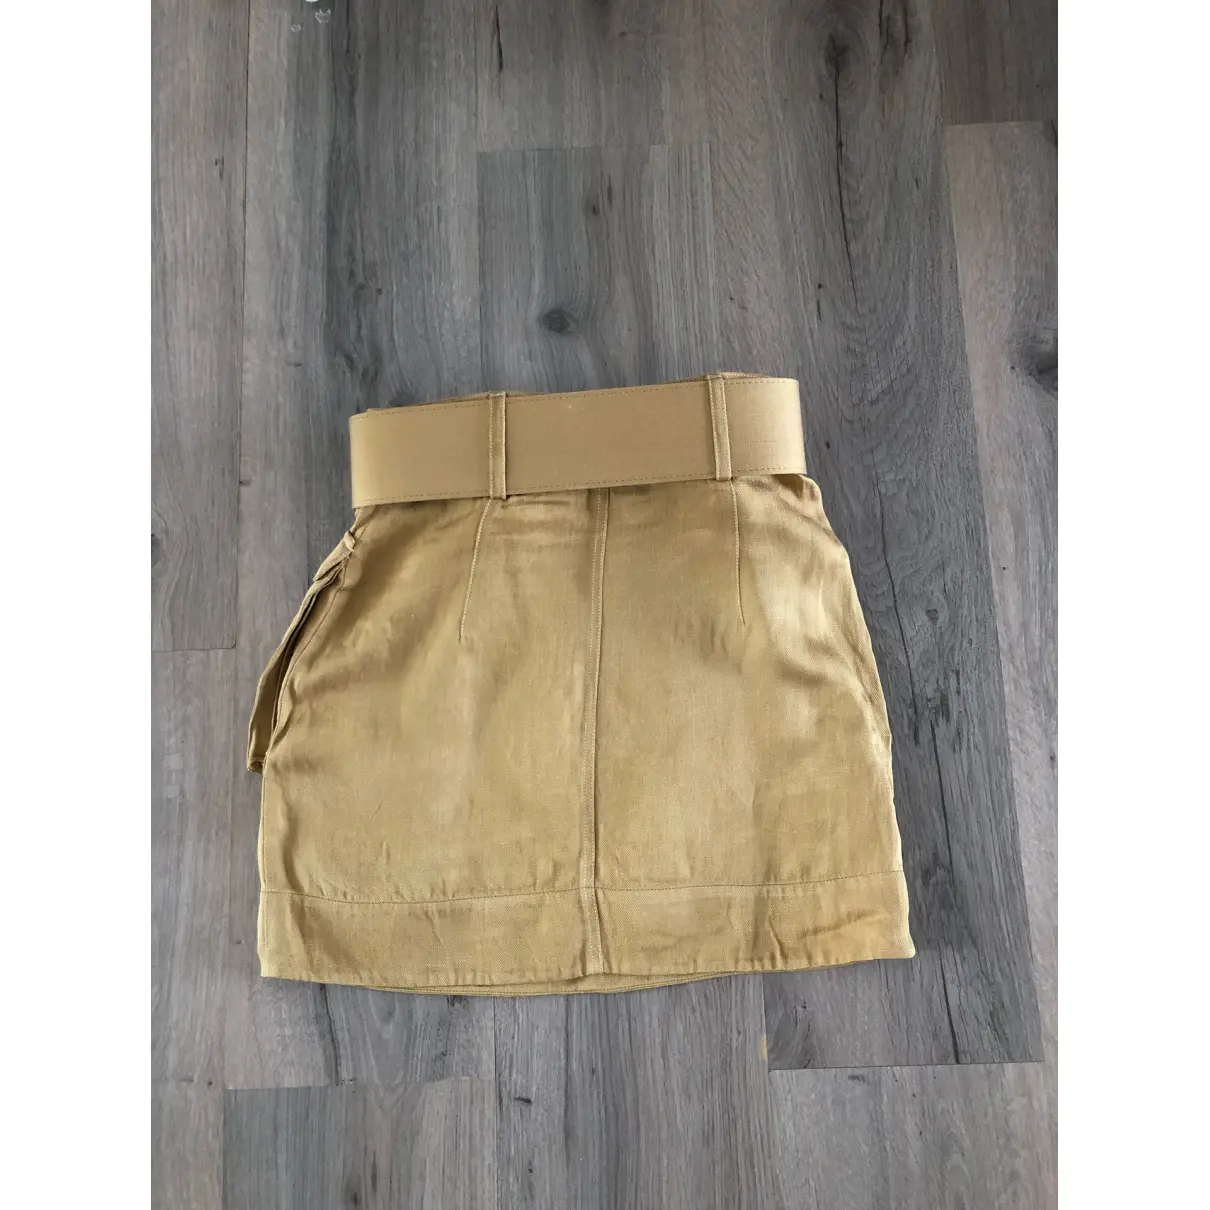 Buy Shona Joy Linen mini skirt online